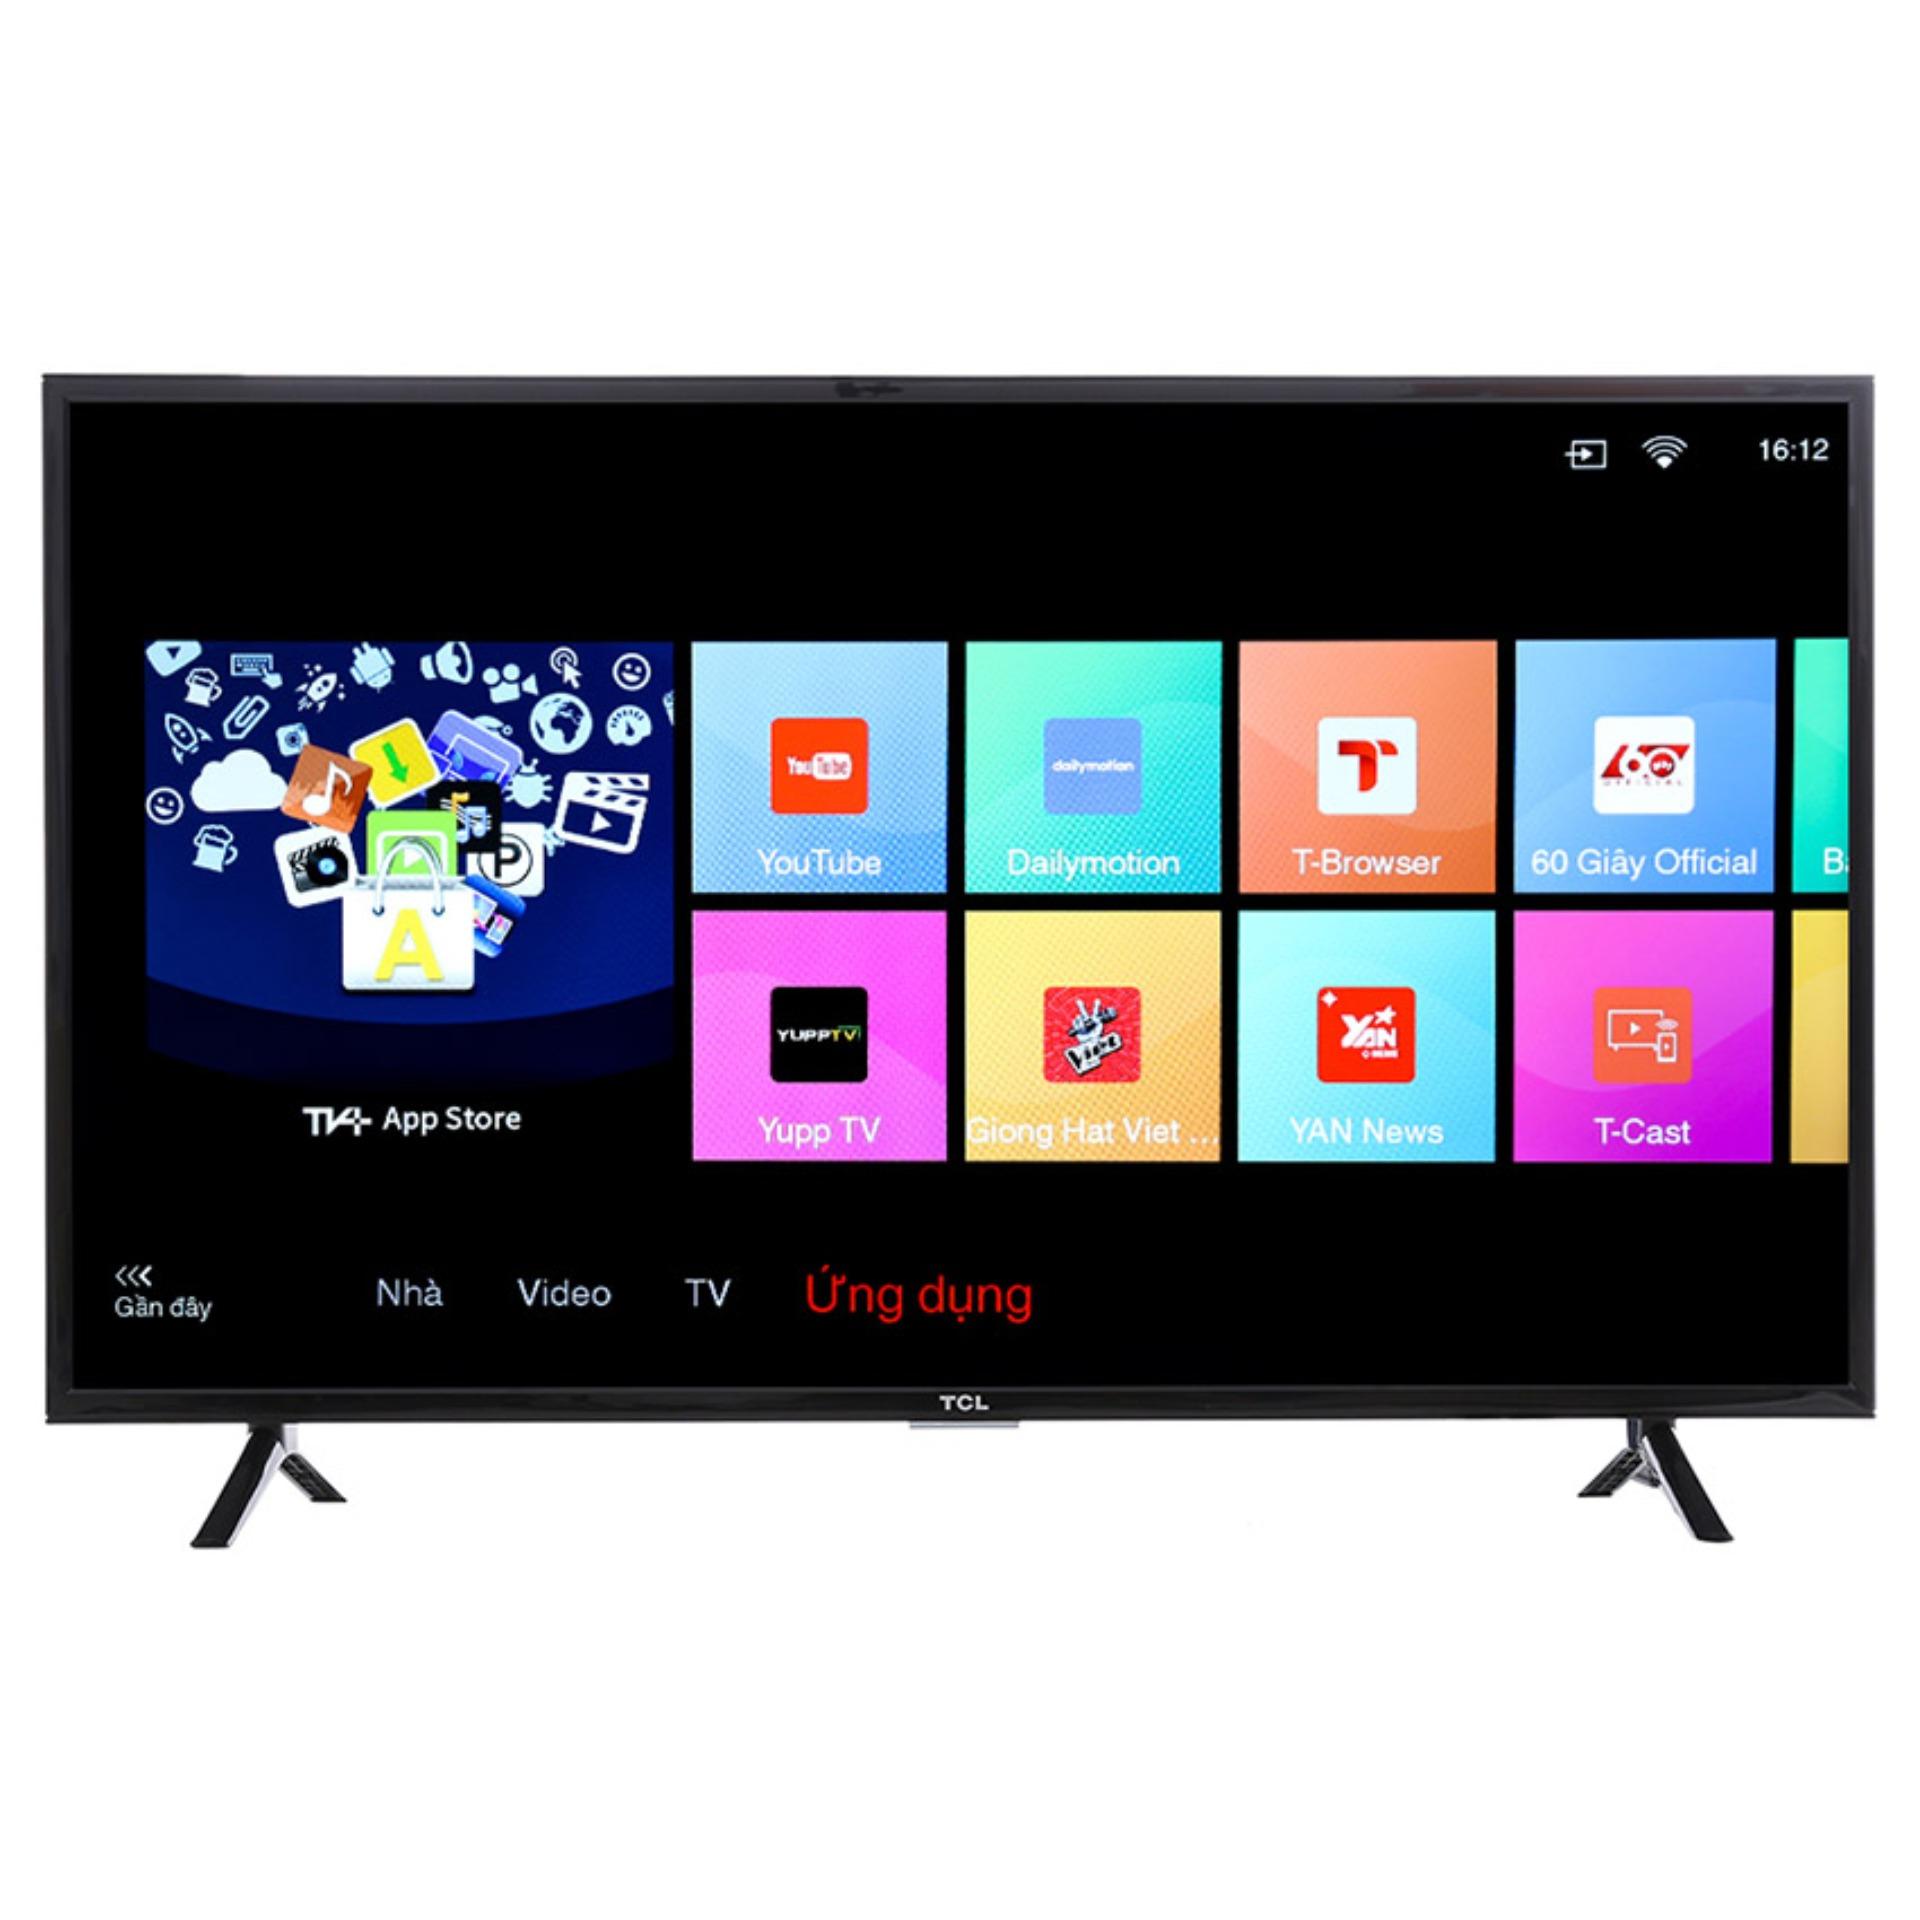 Smart TV LED TCL 40inch HD - Model L40S62 (Đen) - Hãng phân phối chính thức